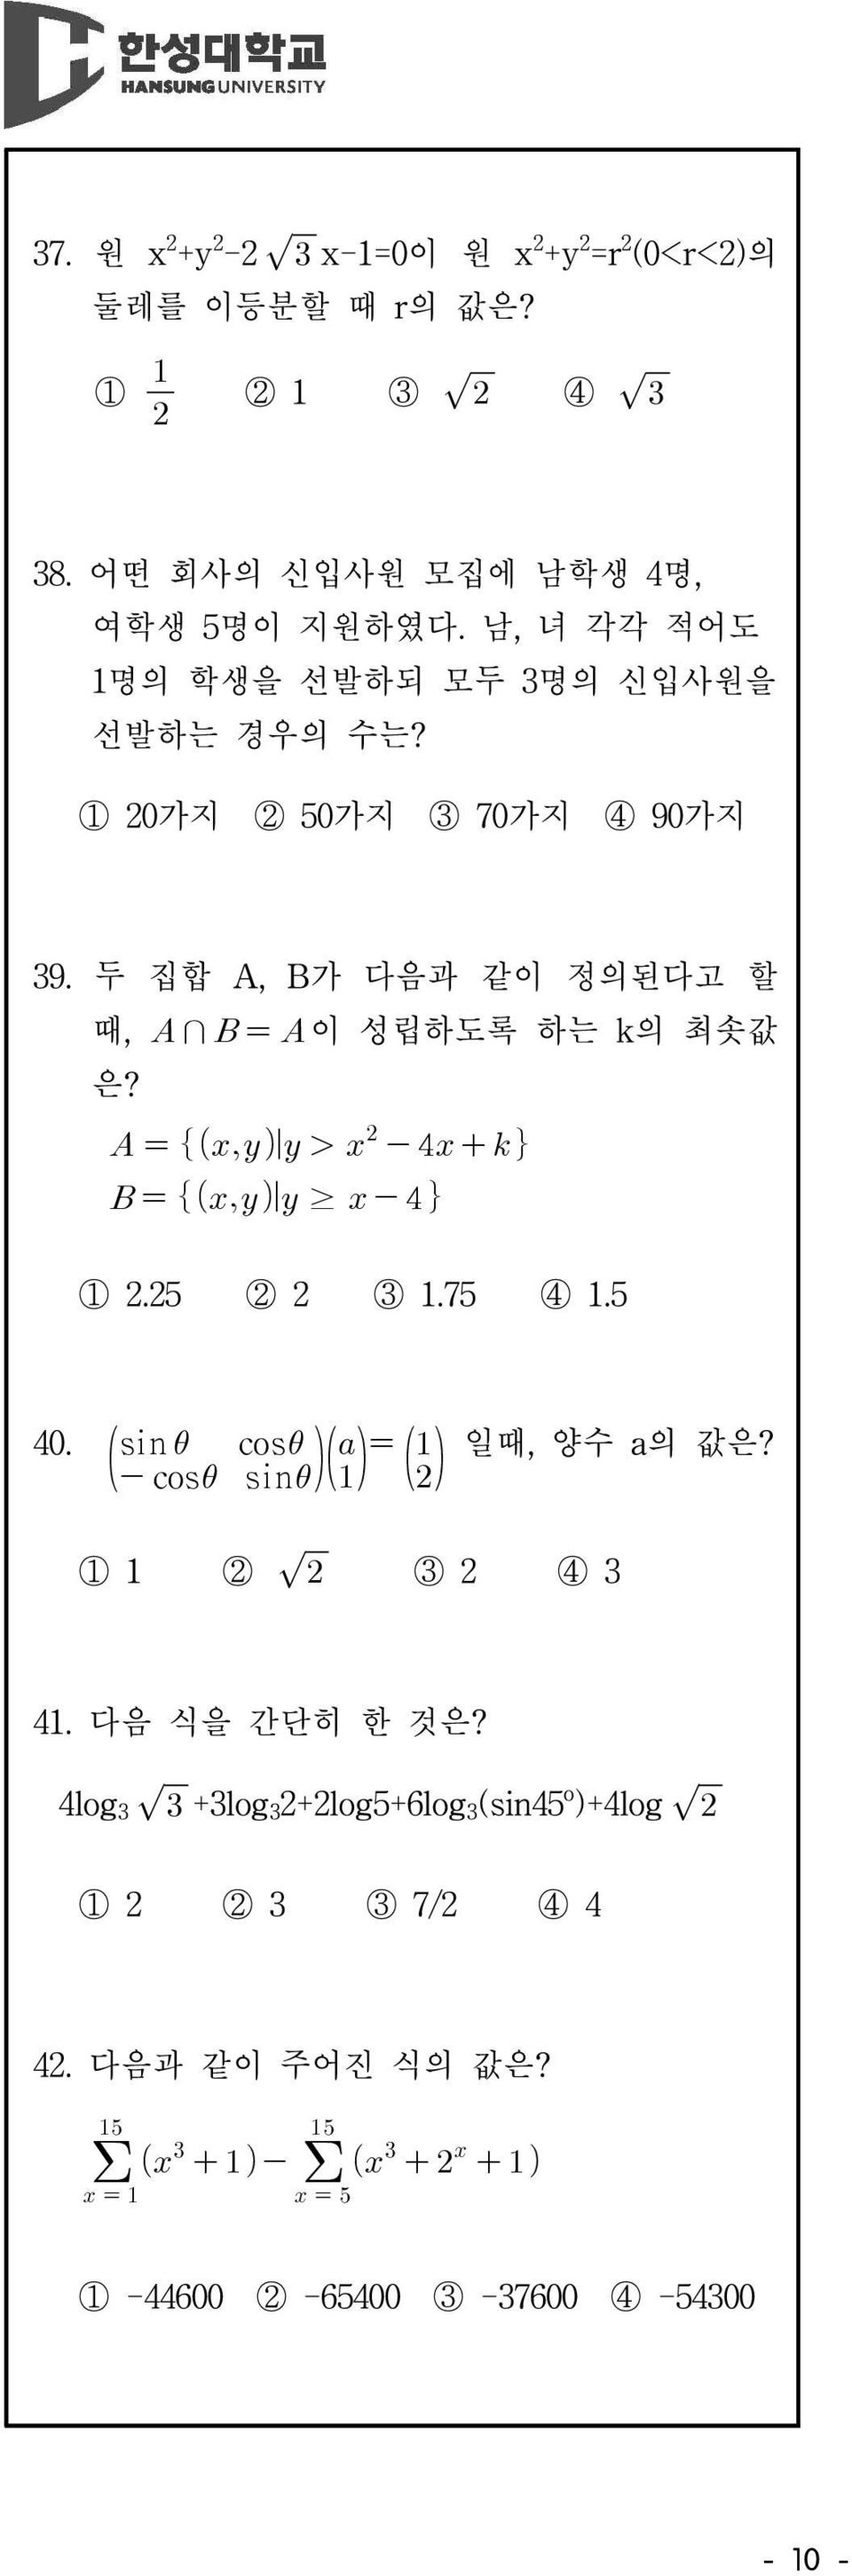 1 20가지 2 50가지 3 70가지 4 90가지 39. 두 집합 A, B가 다음과 같이 정의된다고 할 때, 이 성립하도록 하는 k의 최솟값 은? 1 2.25 2 2 3 1.75 4 1.5 40.